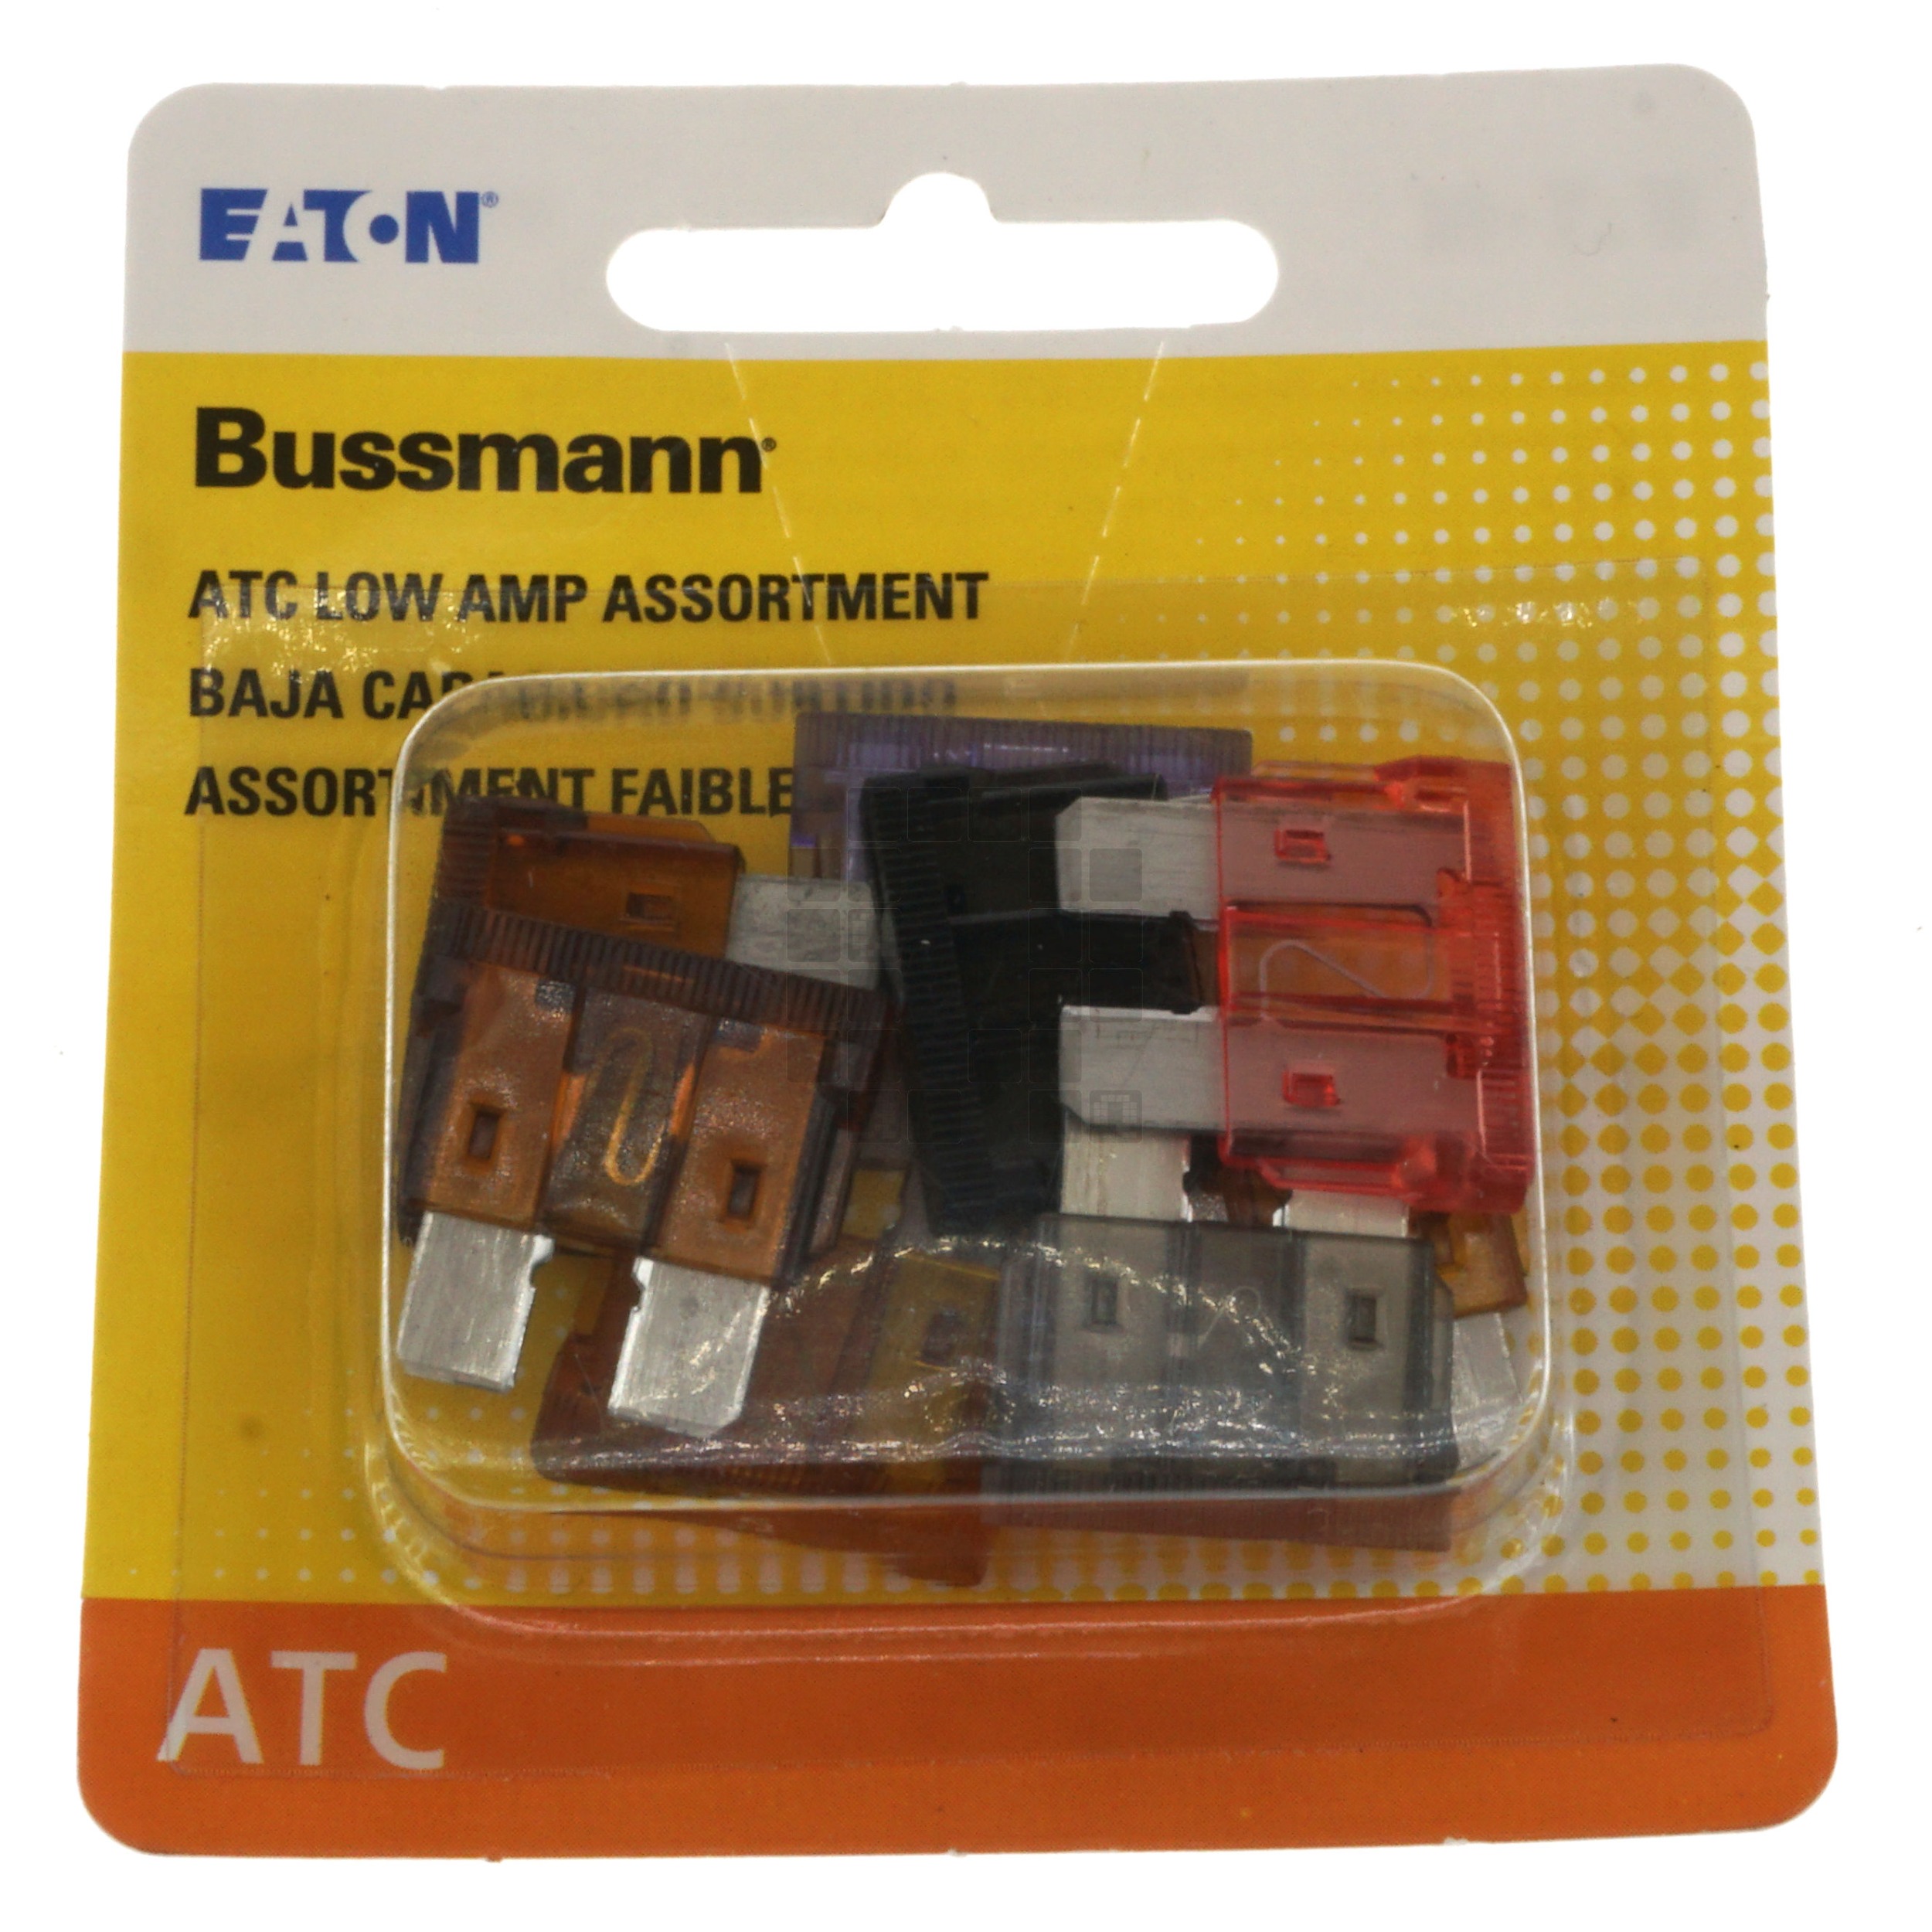 Eaton Bussmann BP/ATC-AL8-RP ATC Low-Amperage Fuse Assortment, 1 to 7.5 Amps